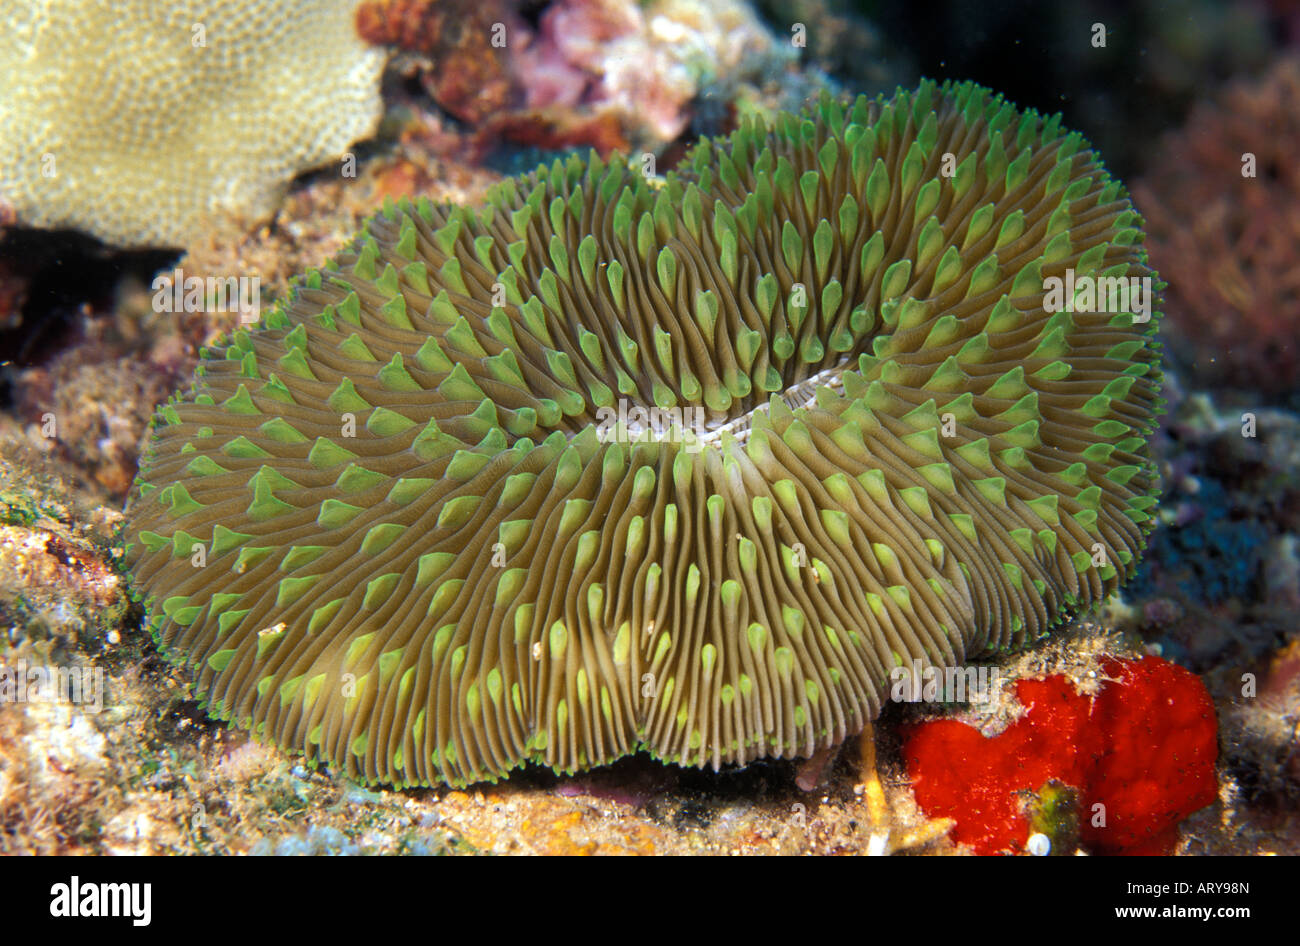 The unique Mushroom Coral (Fungia scutaria).  Hawaiian name is Ako ako a kohe. Stock Photo